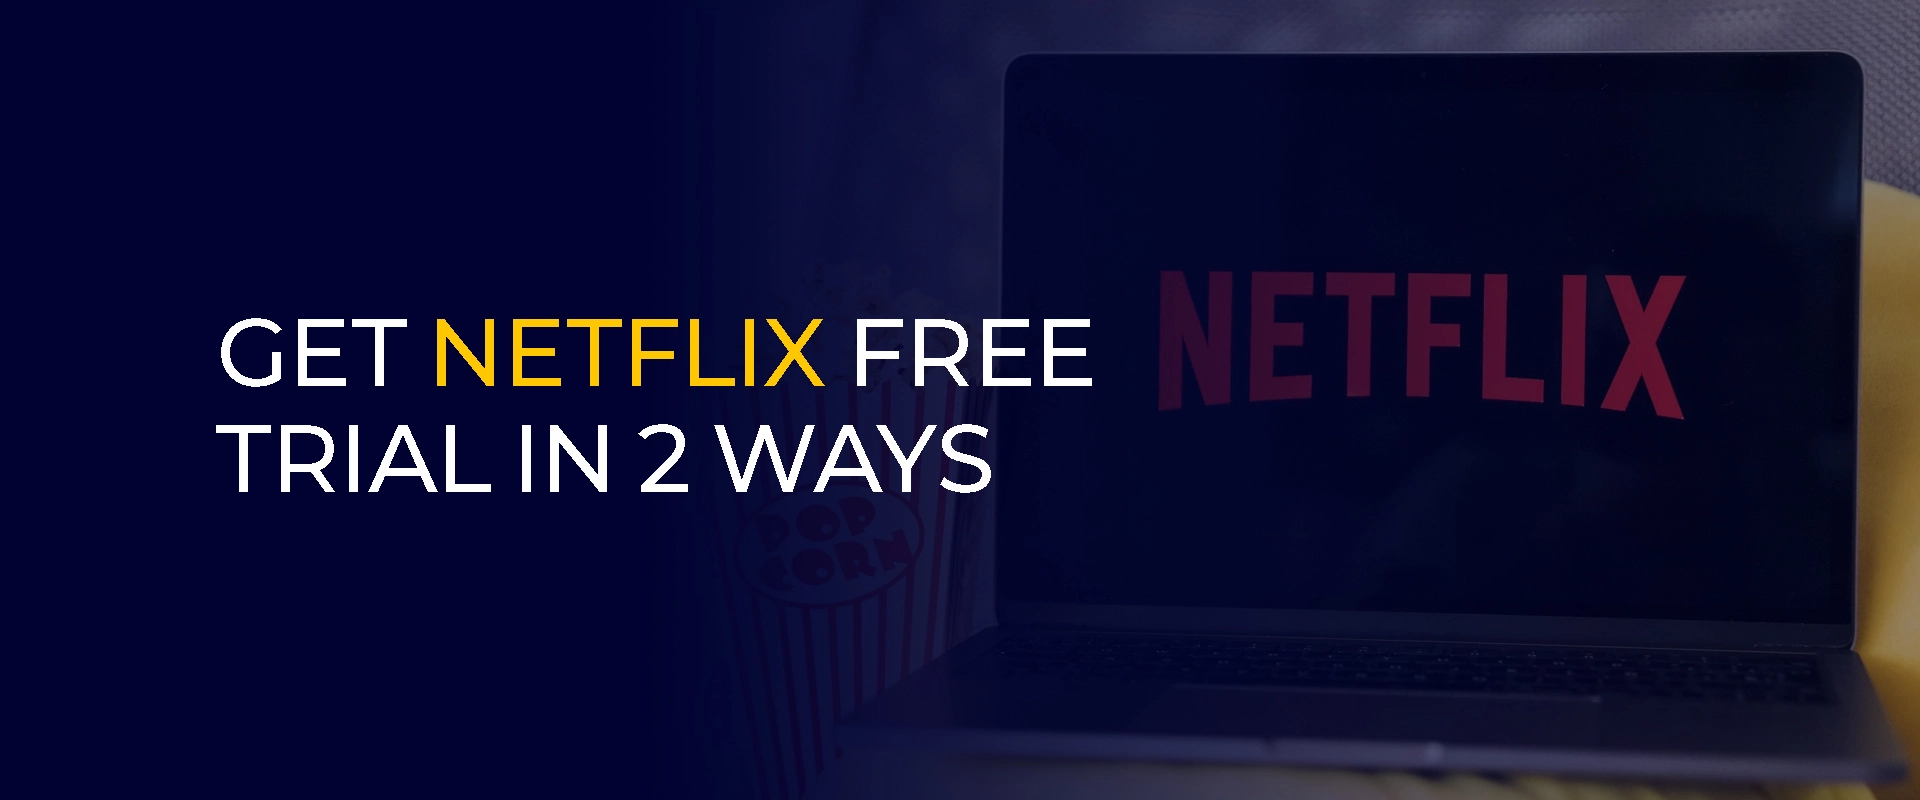 Comment obtenir un essai gratuit de Netflix de 2 manières